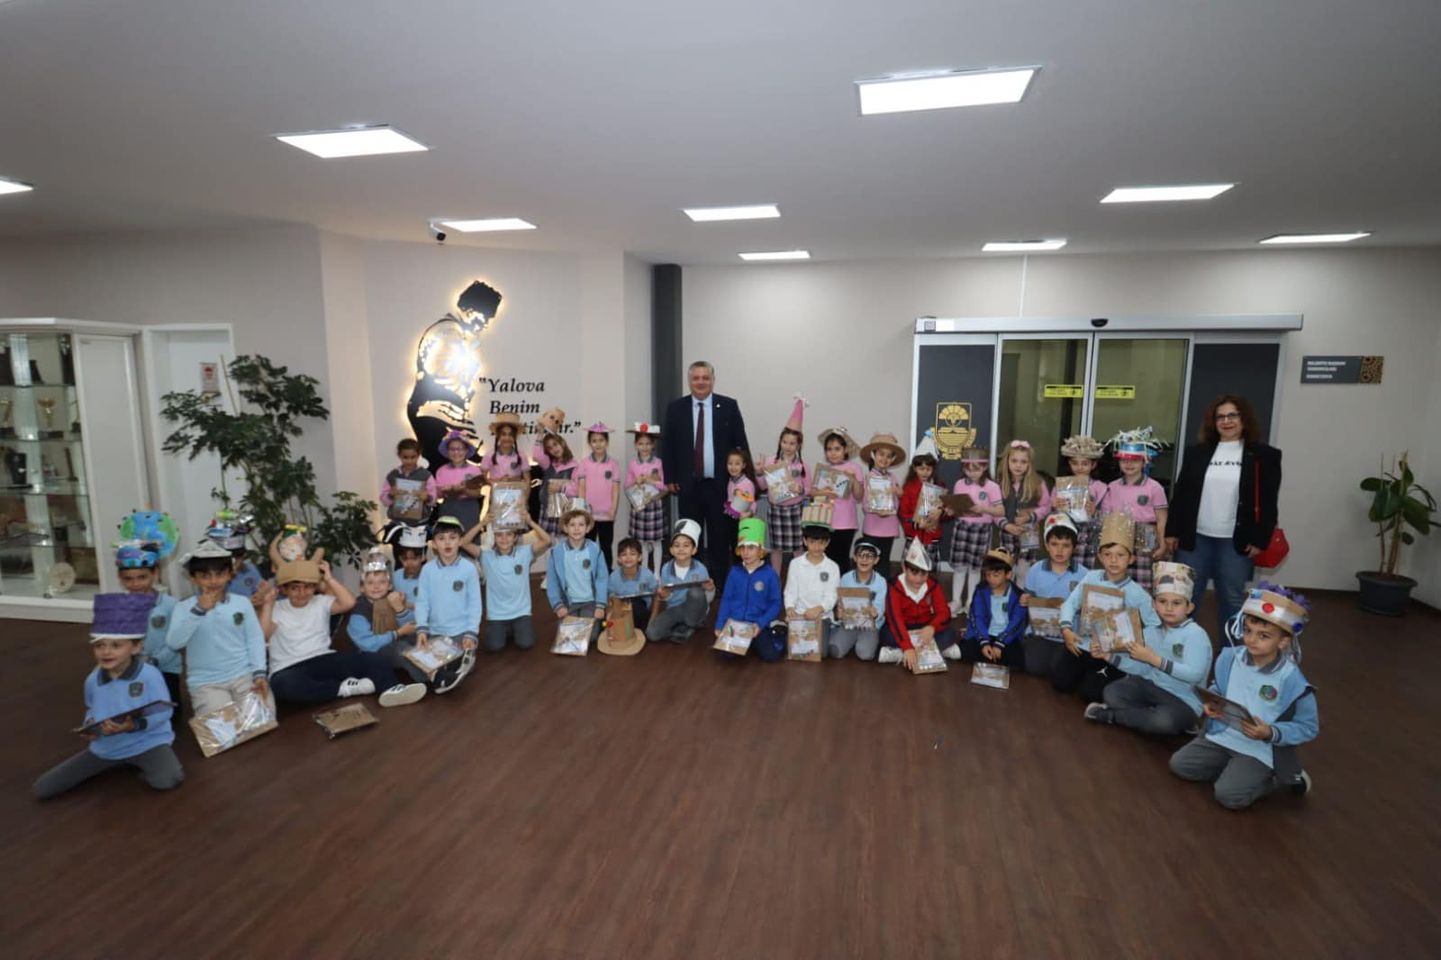 Yalova Belediyesi, Çocuklara Geri Dönüşüm Bilinci Kazandırmak İçin Etkinlikler Düzenledi